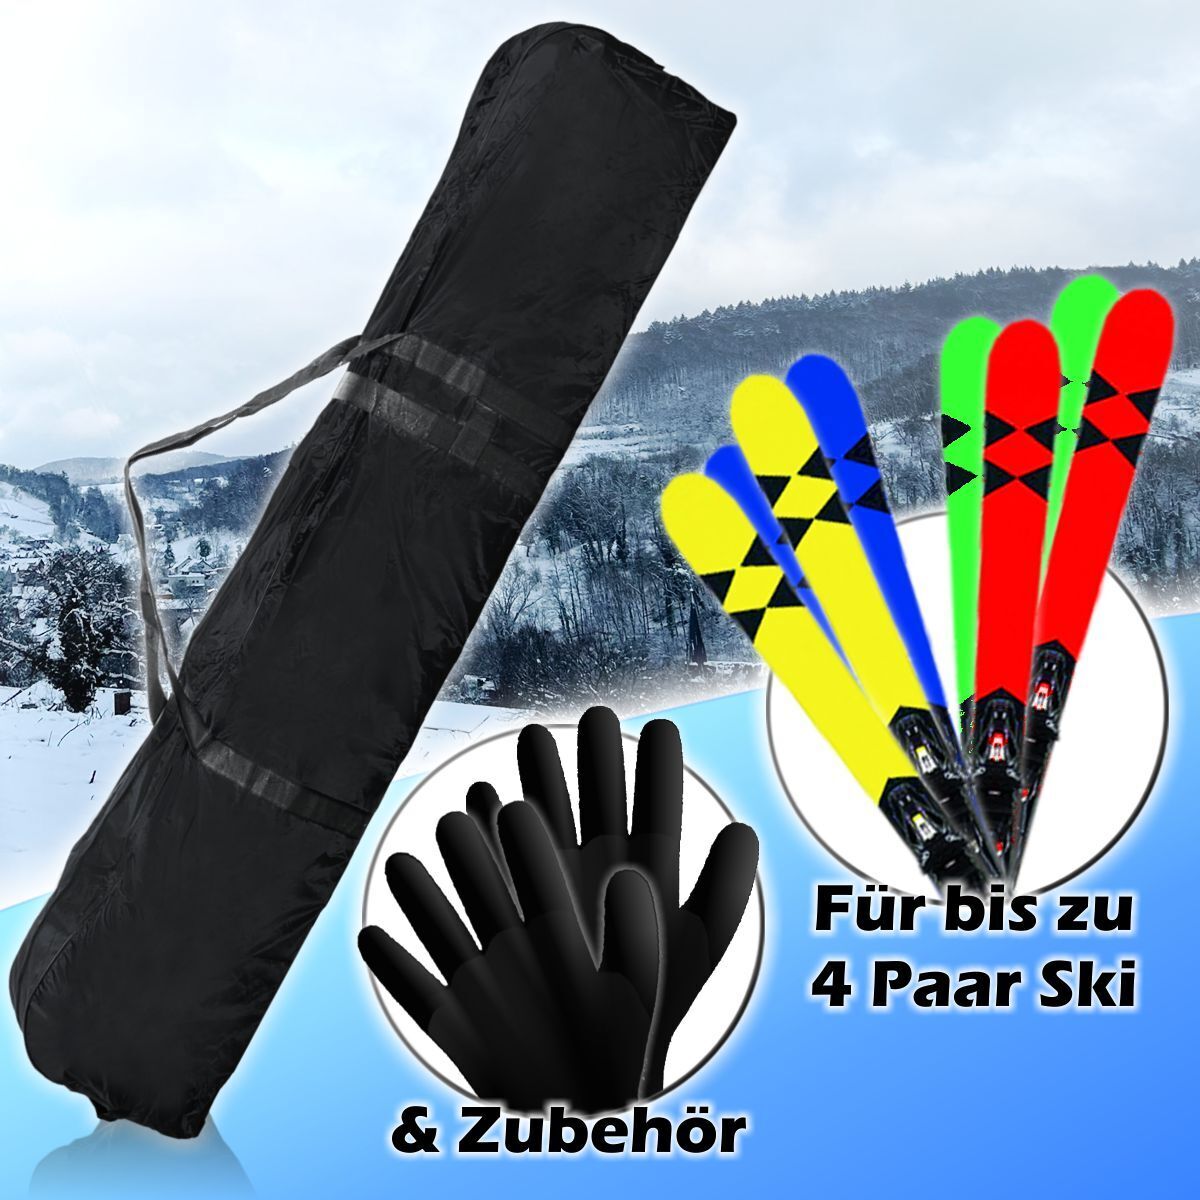 PREMIUM Skisack Skitasche 4 Paar Ski + Zubehör 2m Tasche Schutz Bag  Skicover | eBay